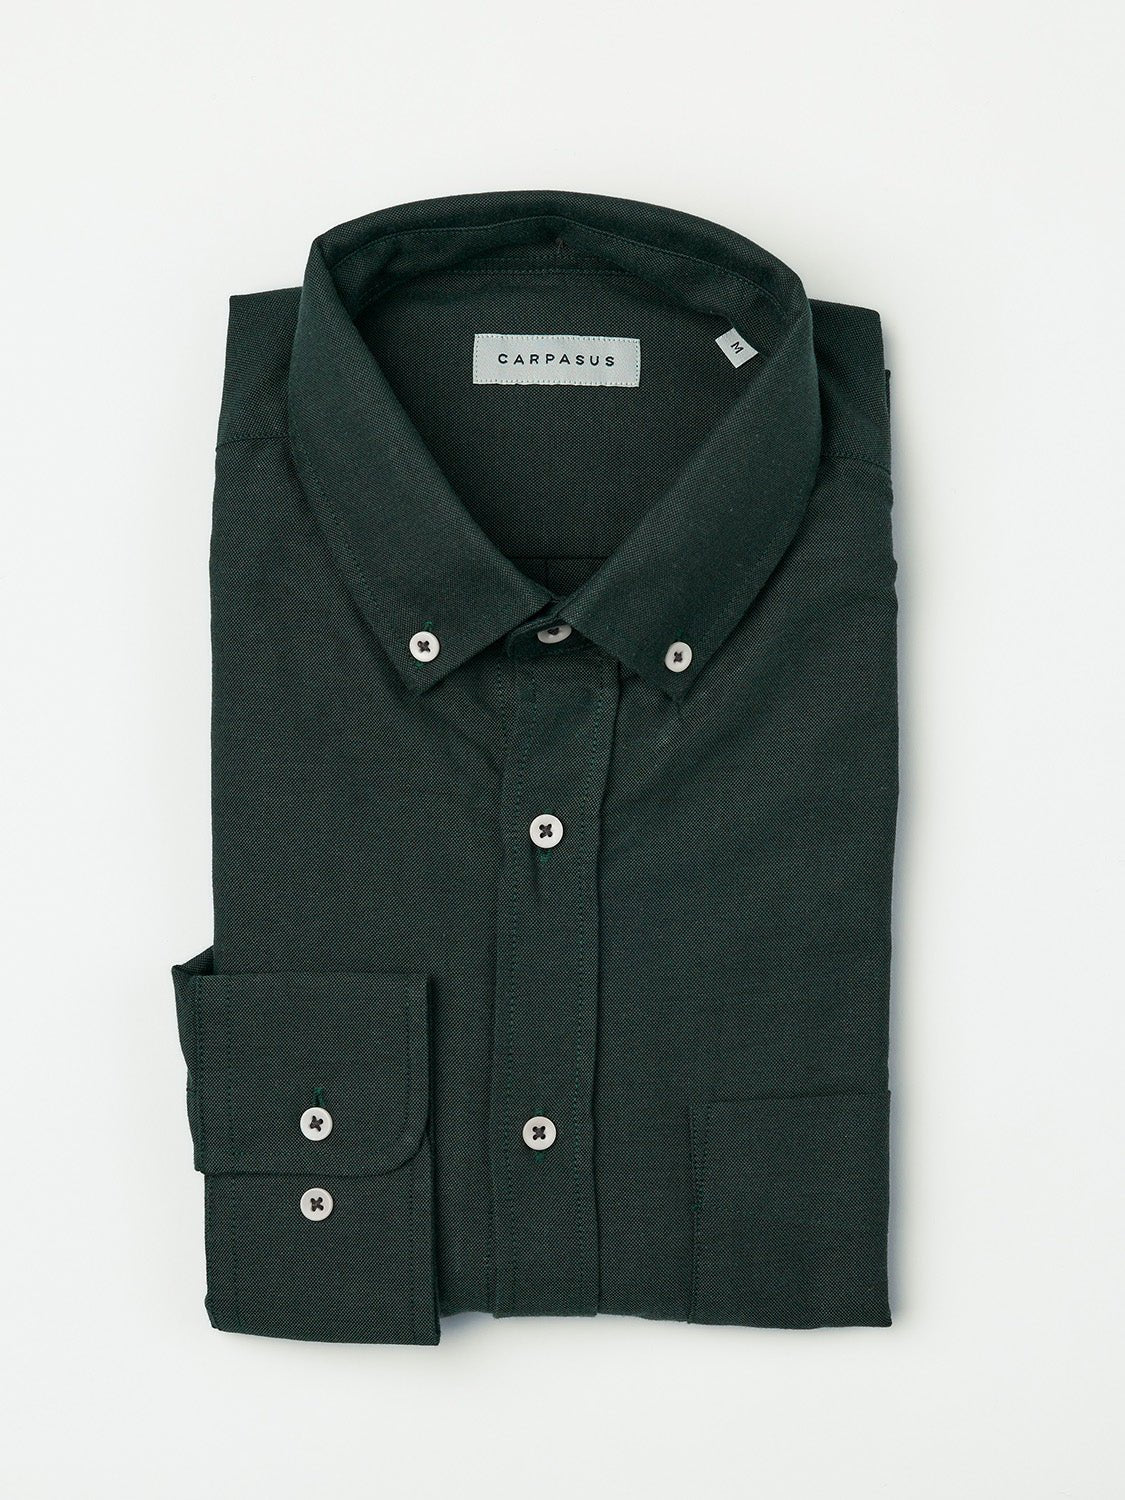 carpasus sustainable organic cotton oxford shirt dark green. Nachhaltiges Carpasus Oxford Hemd aus Bio Baumwolle in Dunkelgruen